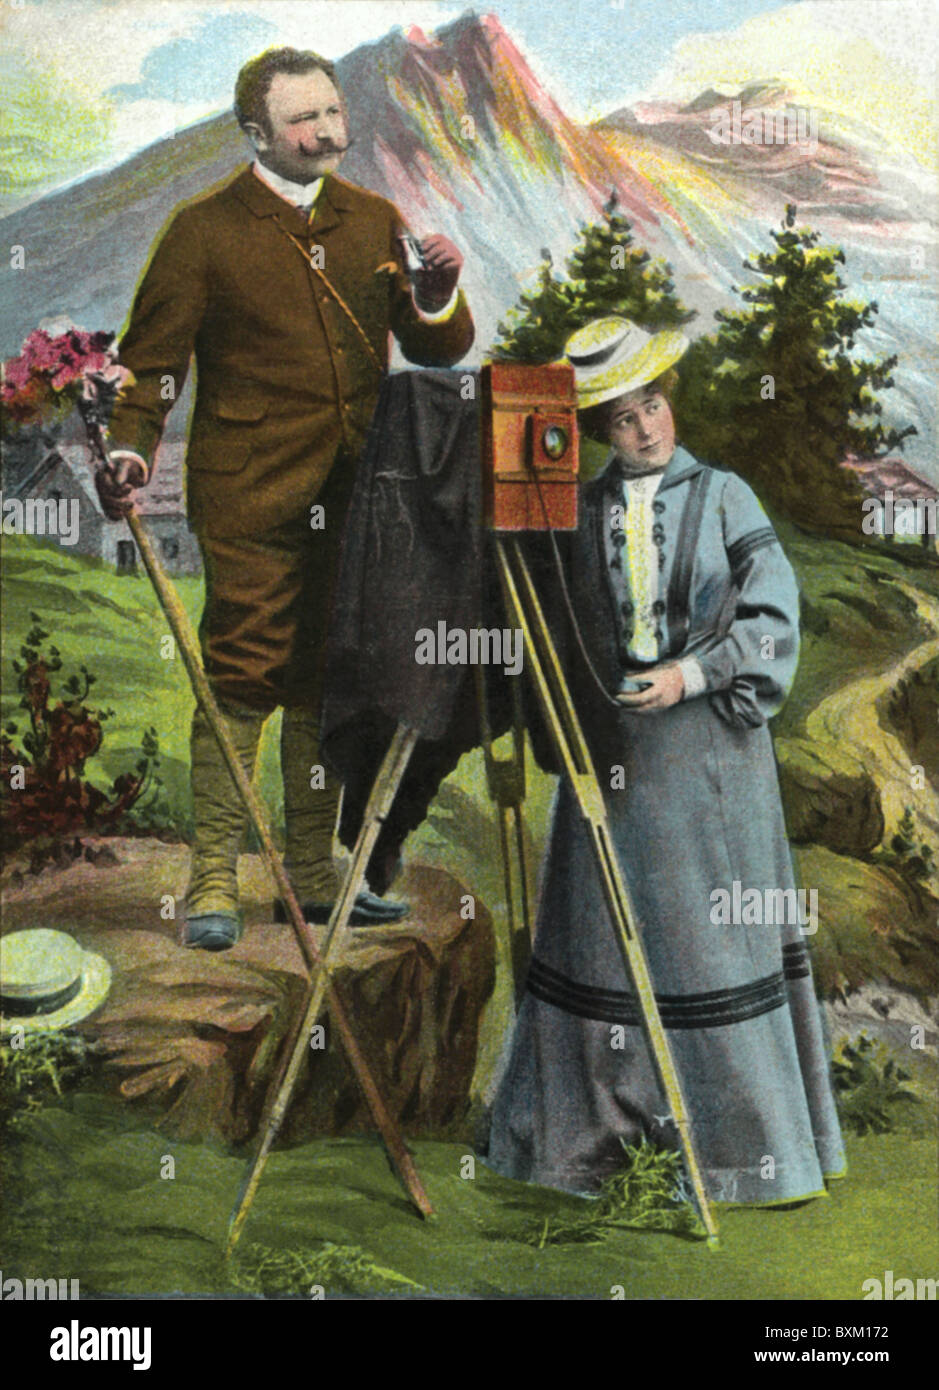 Fotografie, Fotografie, Fotograf in den Bergen, Kamera auf Stativ, Bayern, Deutschland, um 1909, Zusatz-Rechteklärung-nicht vorhanden Stockfoto